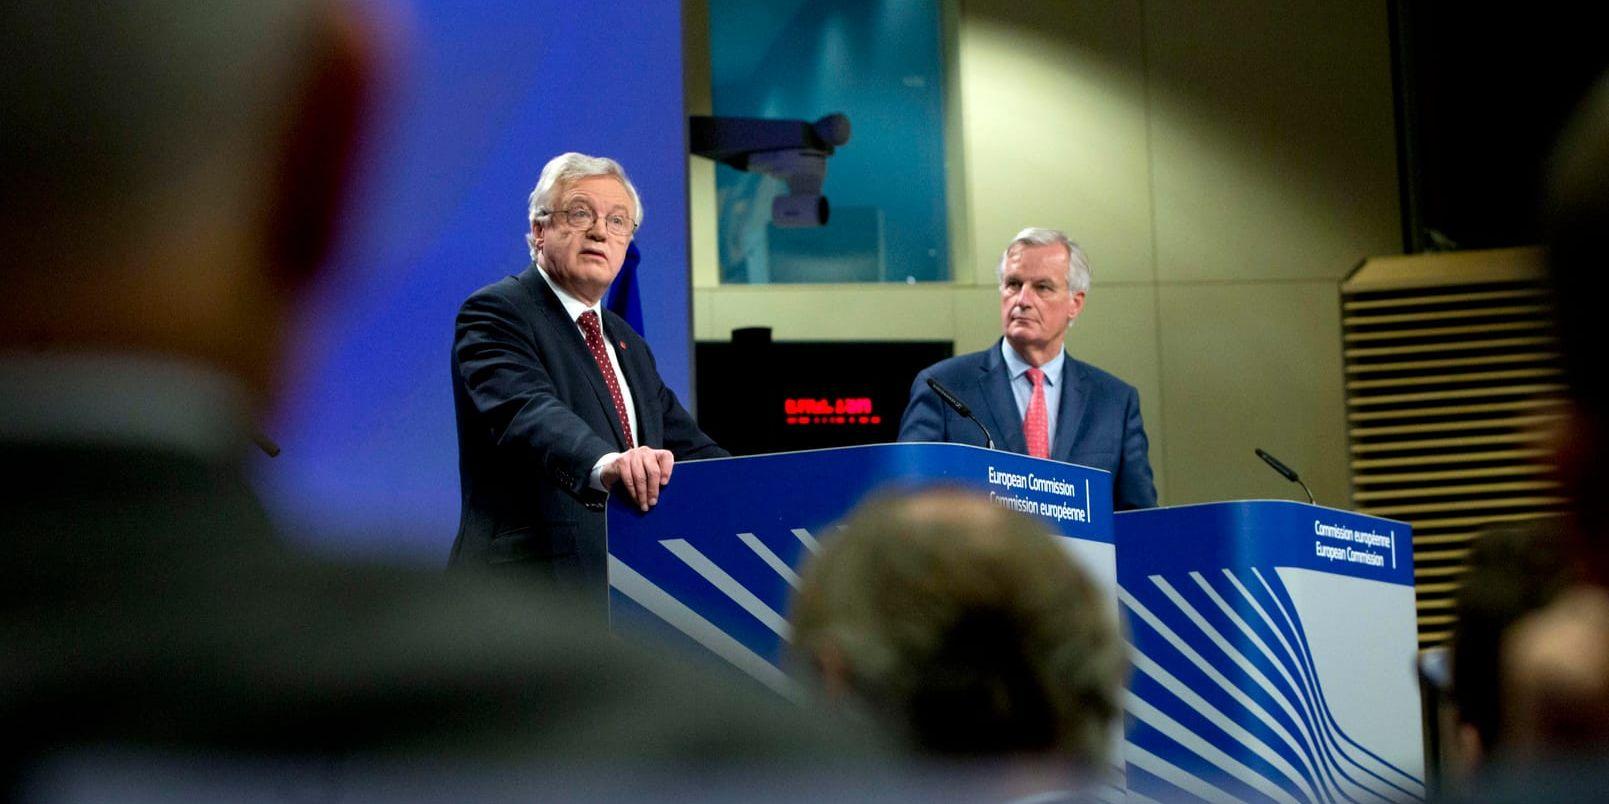 Storbritanniens brexitminister David Davis och EU:s chefsförhandlare Michel Barnier håller presskonferens om den sjätte förhandlingsrundan om det kommandet brittiska utträdet ur EU.